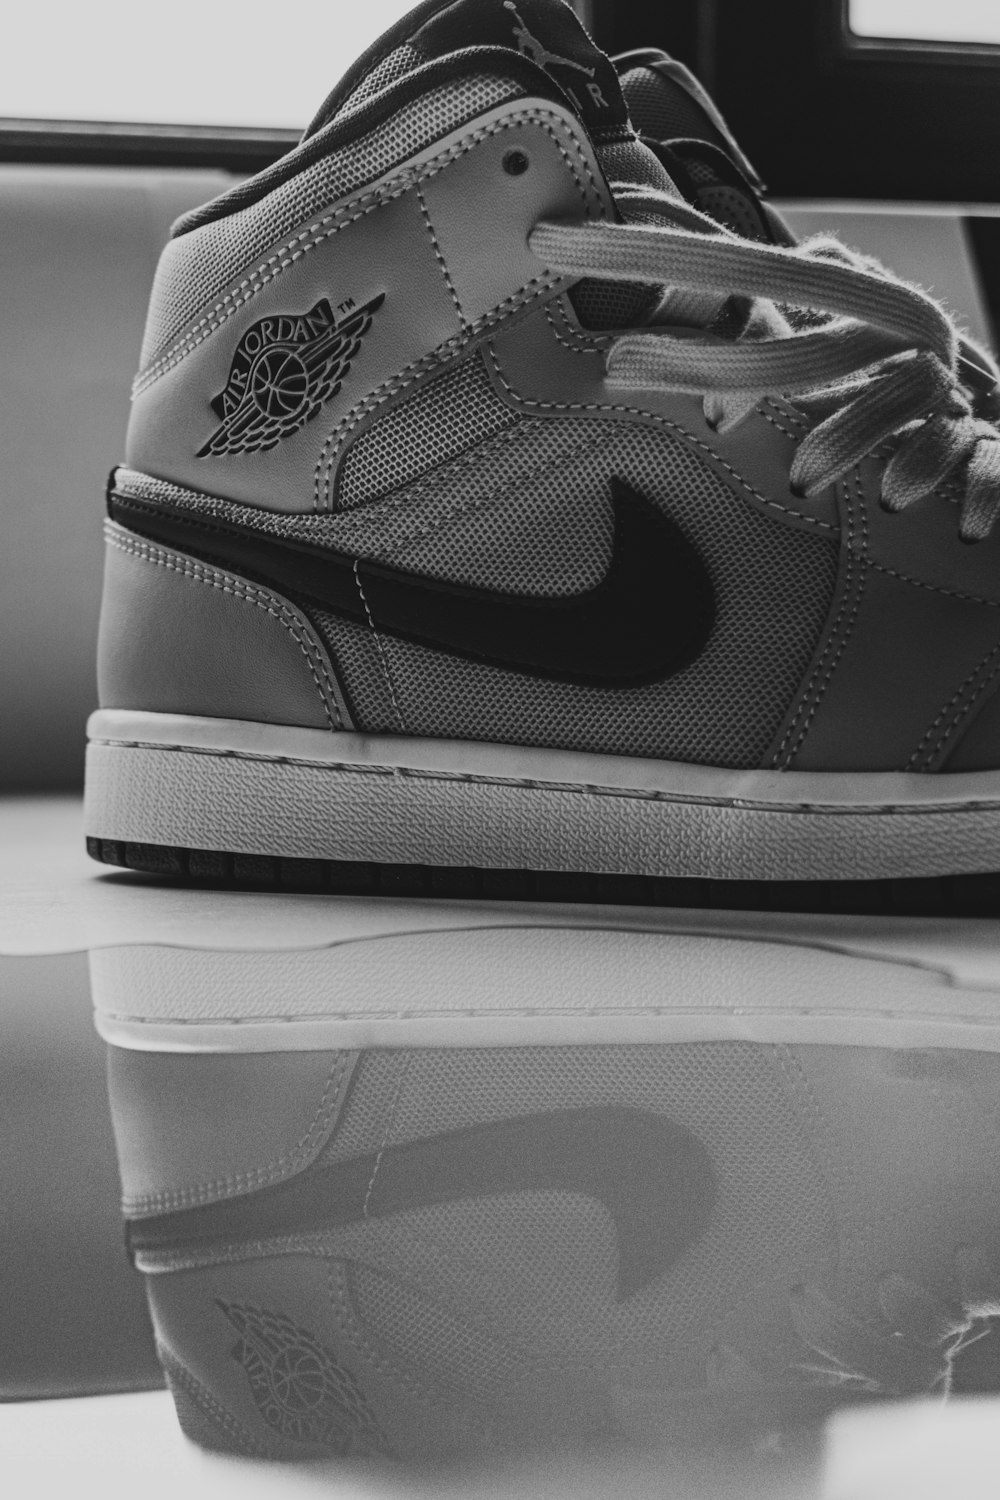 Gray and black nike athletic shoes photo – Free Fashion Image on Unsplash